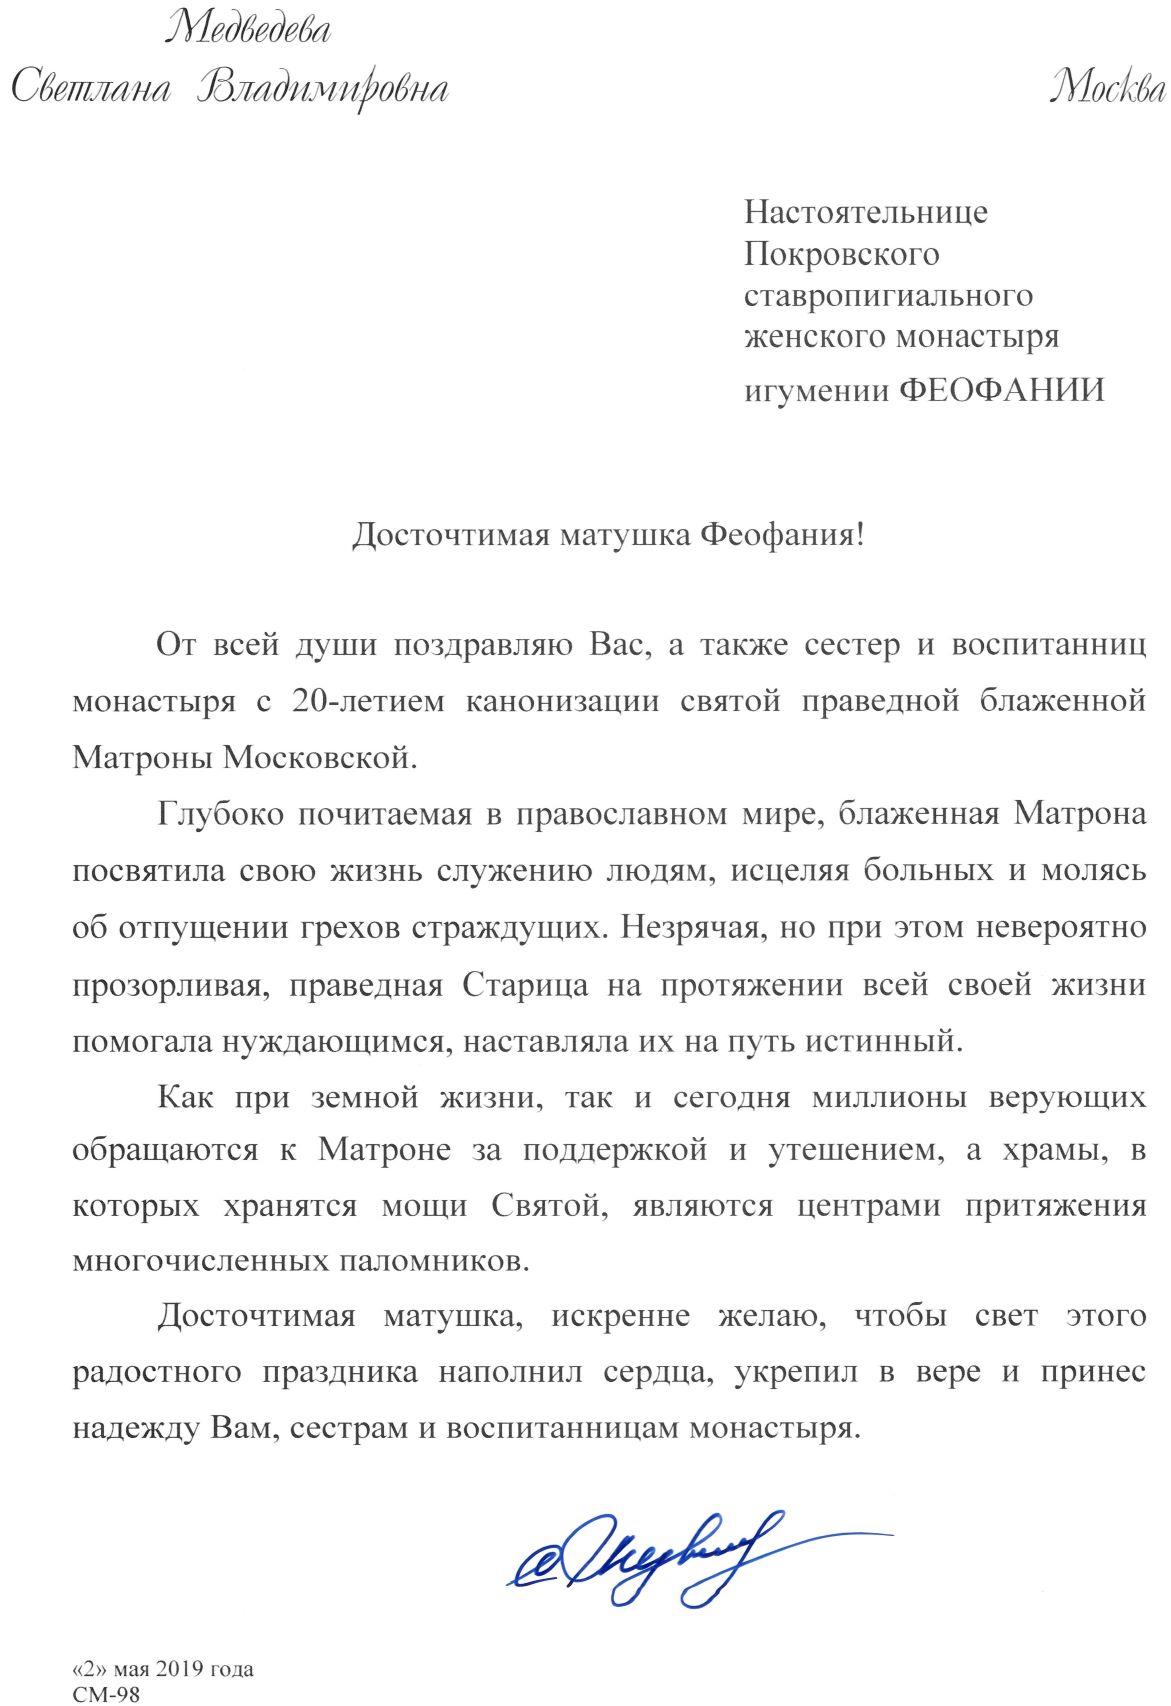 Поздравление Светланы Владимировны Медведевой в день 20-летия канонизации святой Матроны